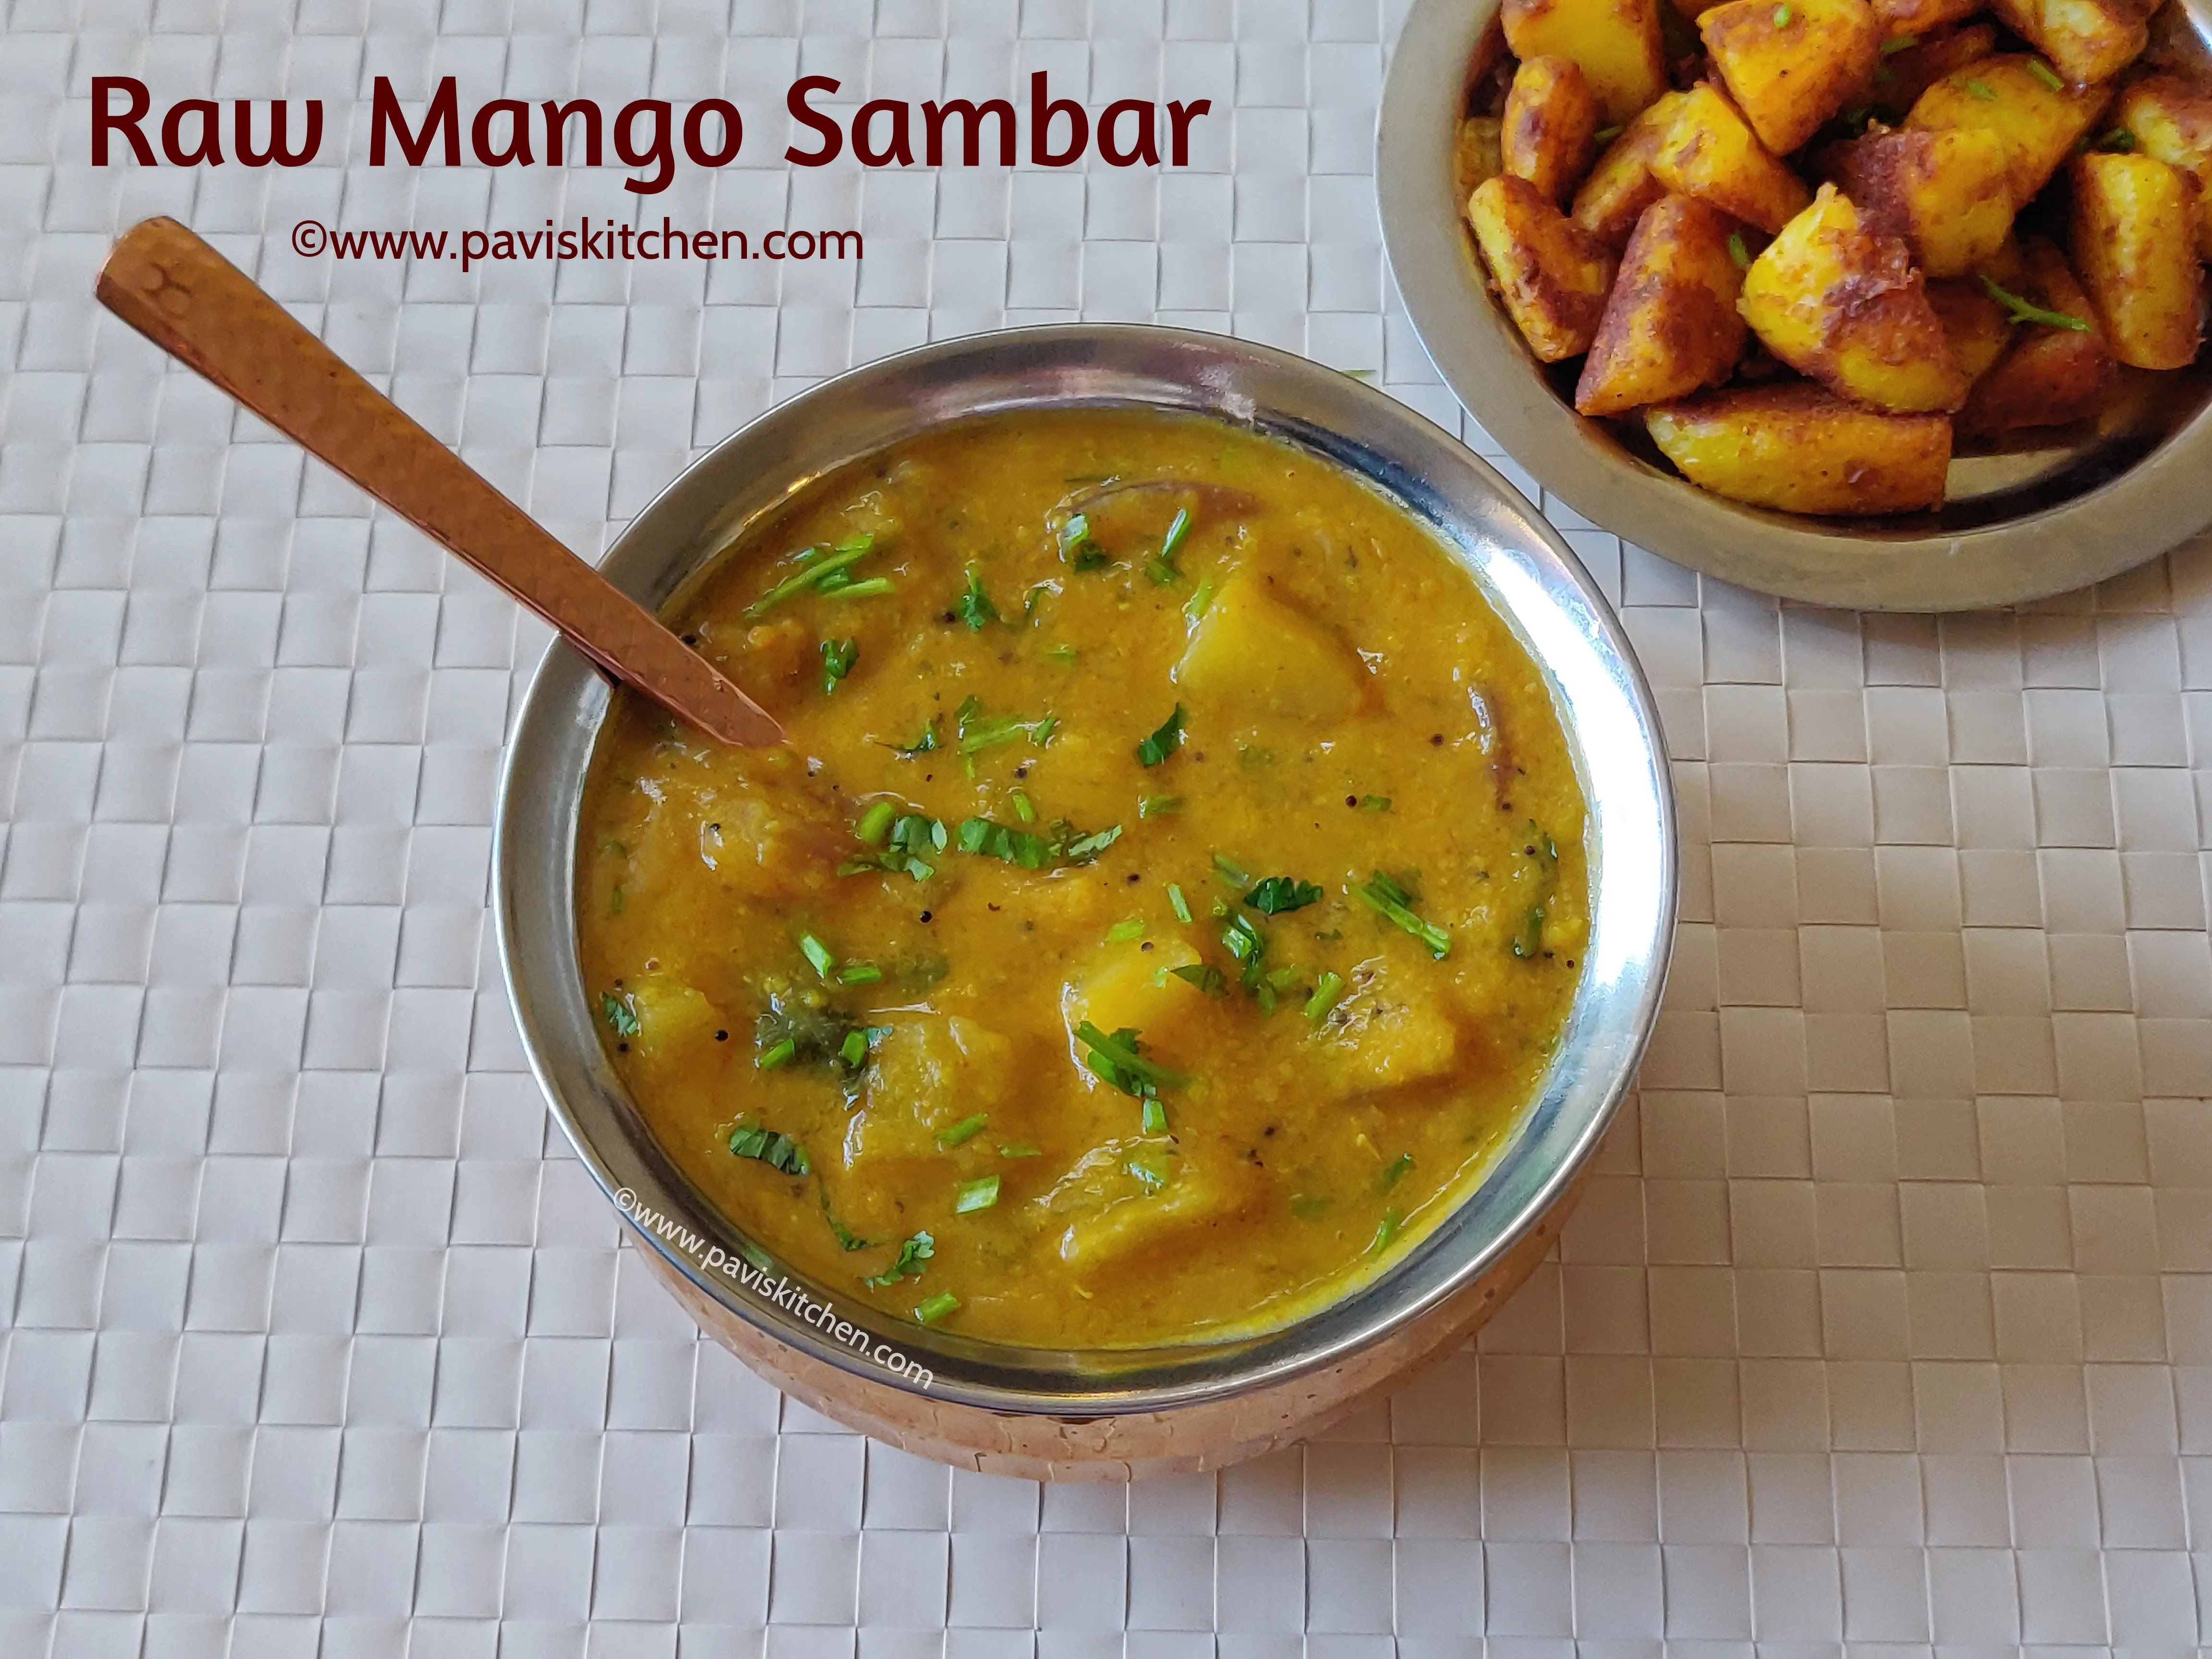 Mango sambar recipe | Raw mango sambar | South Indian mangai sambar